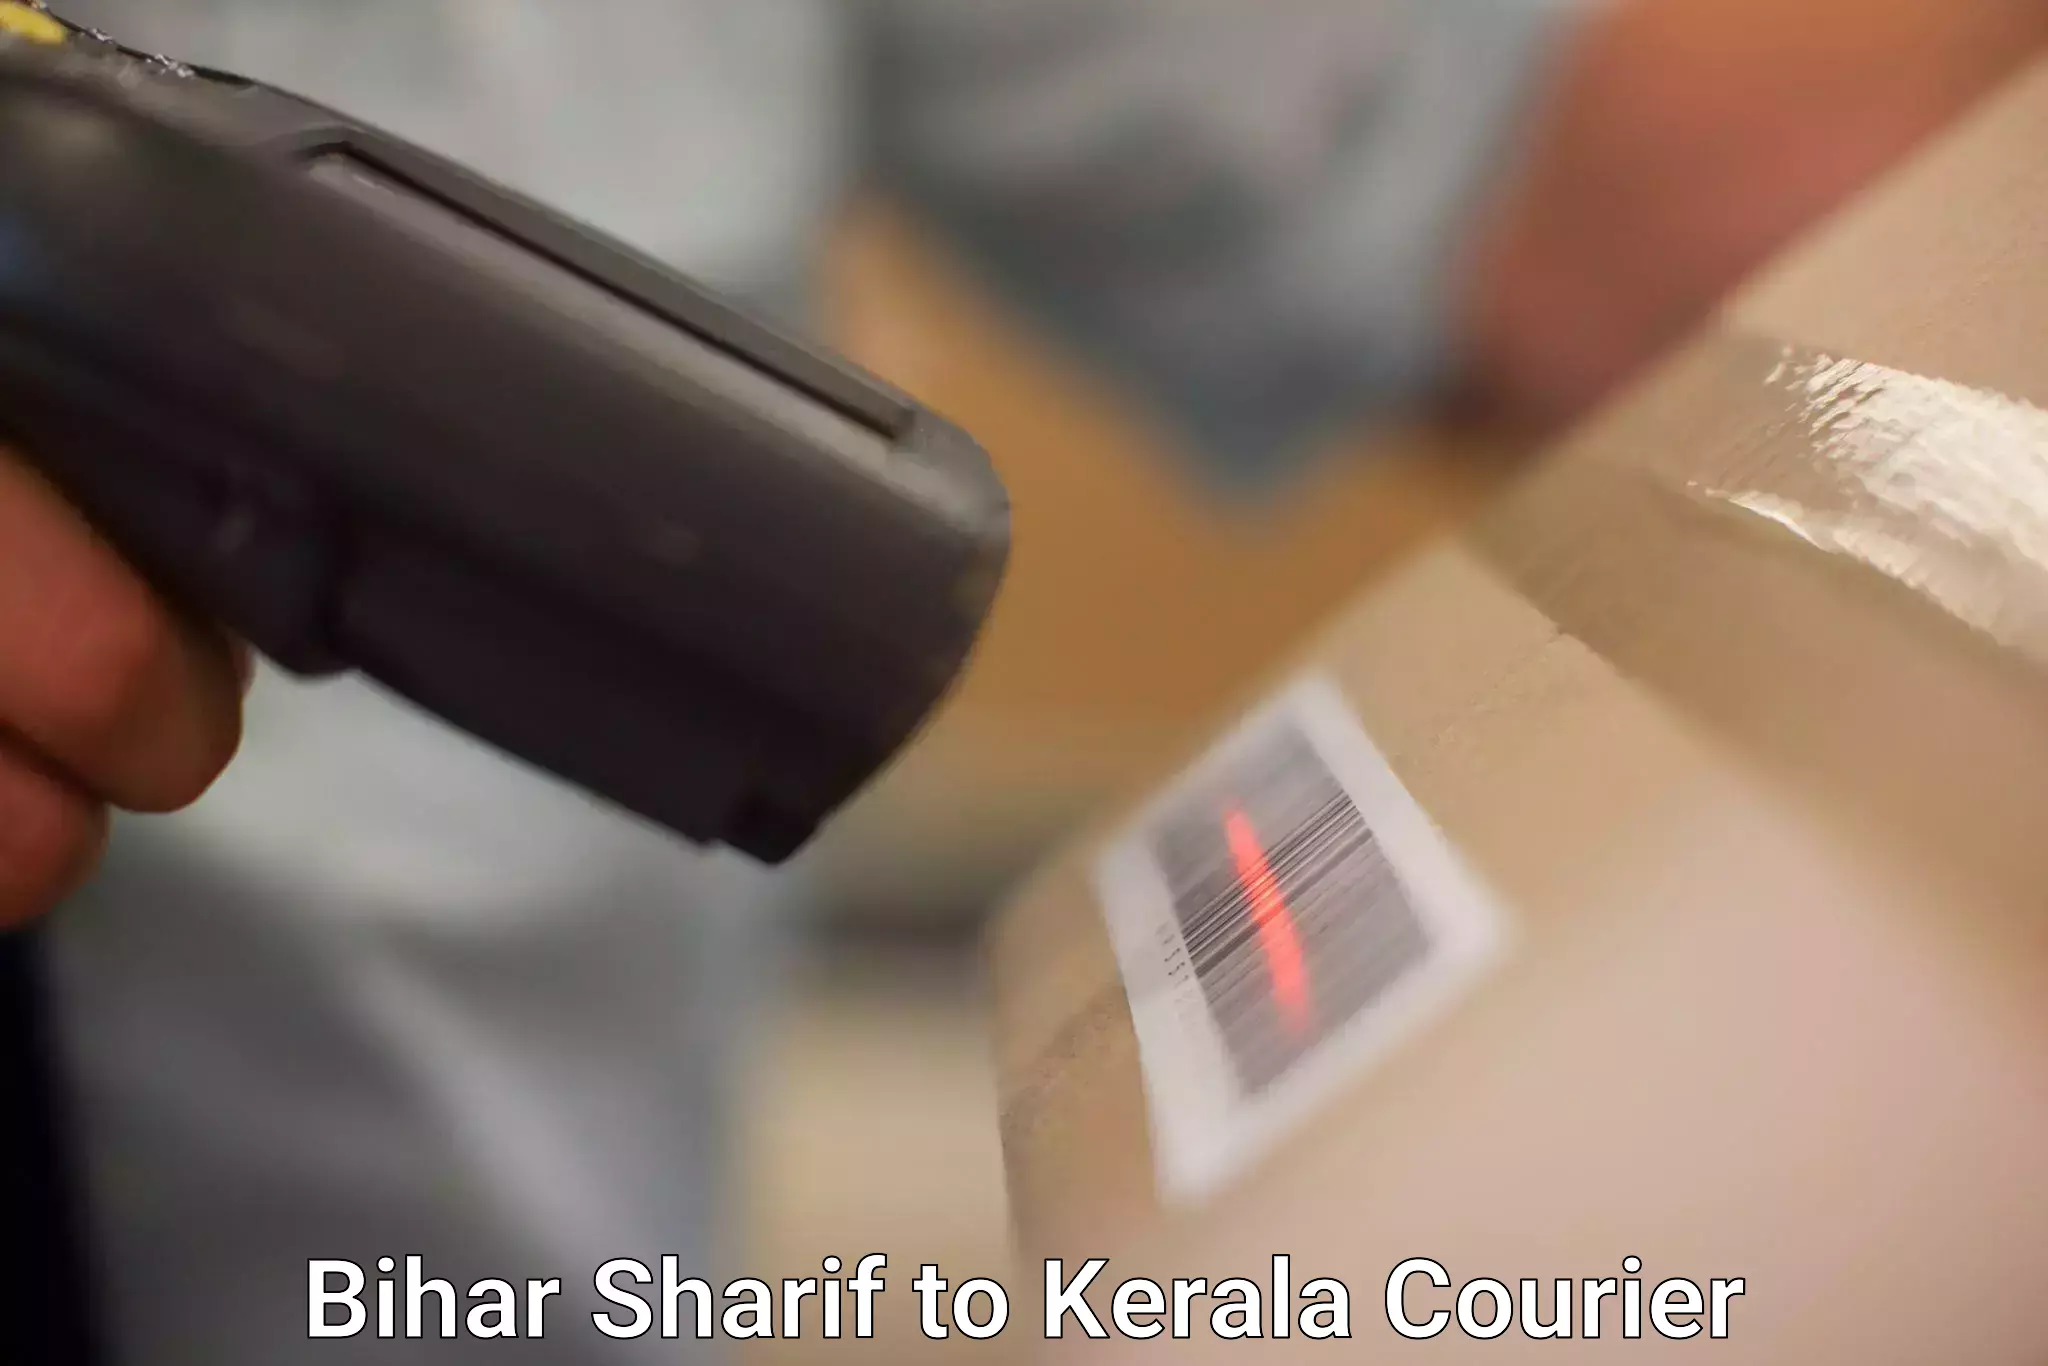 Door-to-door freight service in Bihar Sharif to Kerala